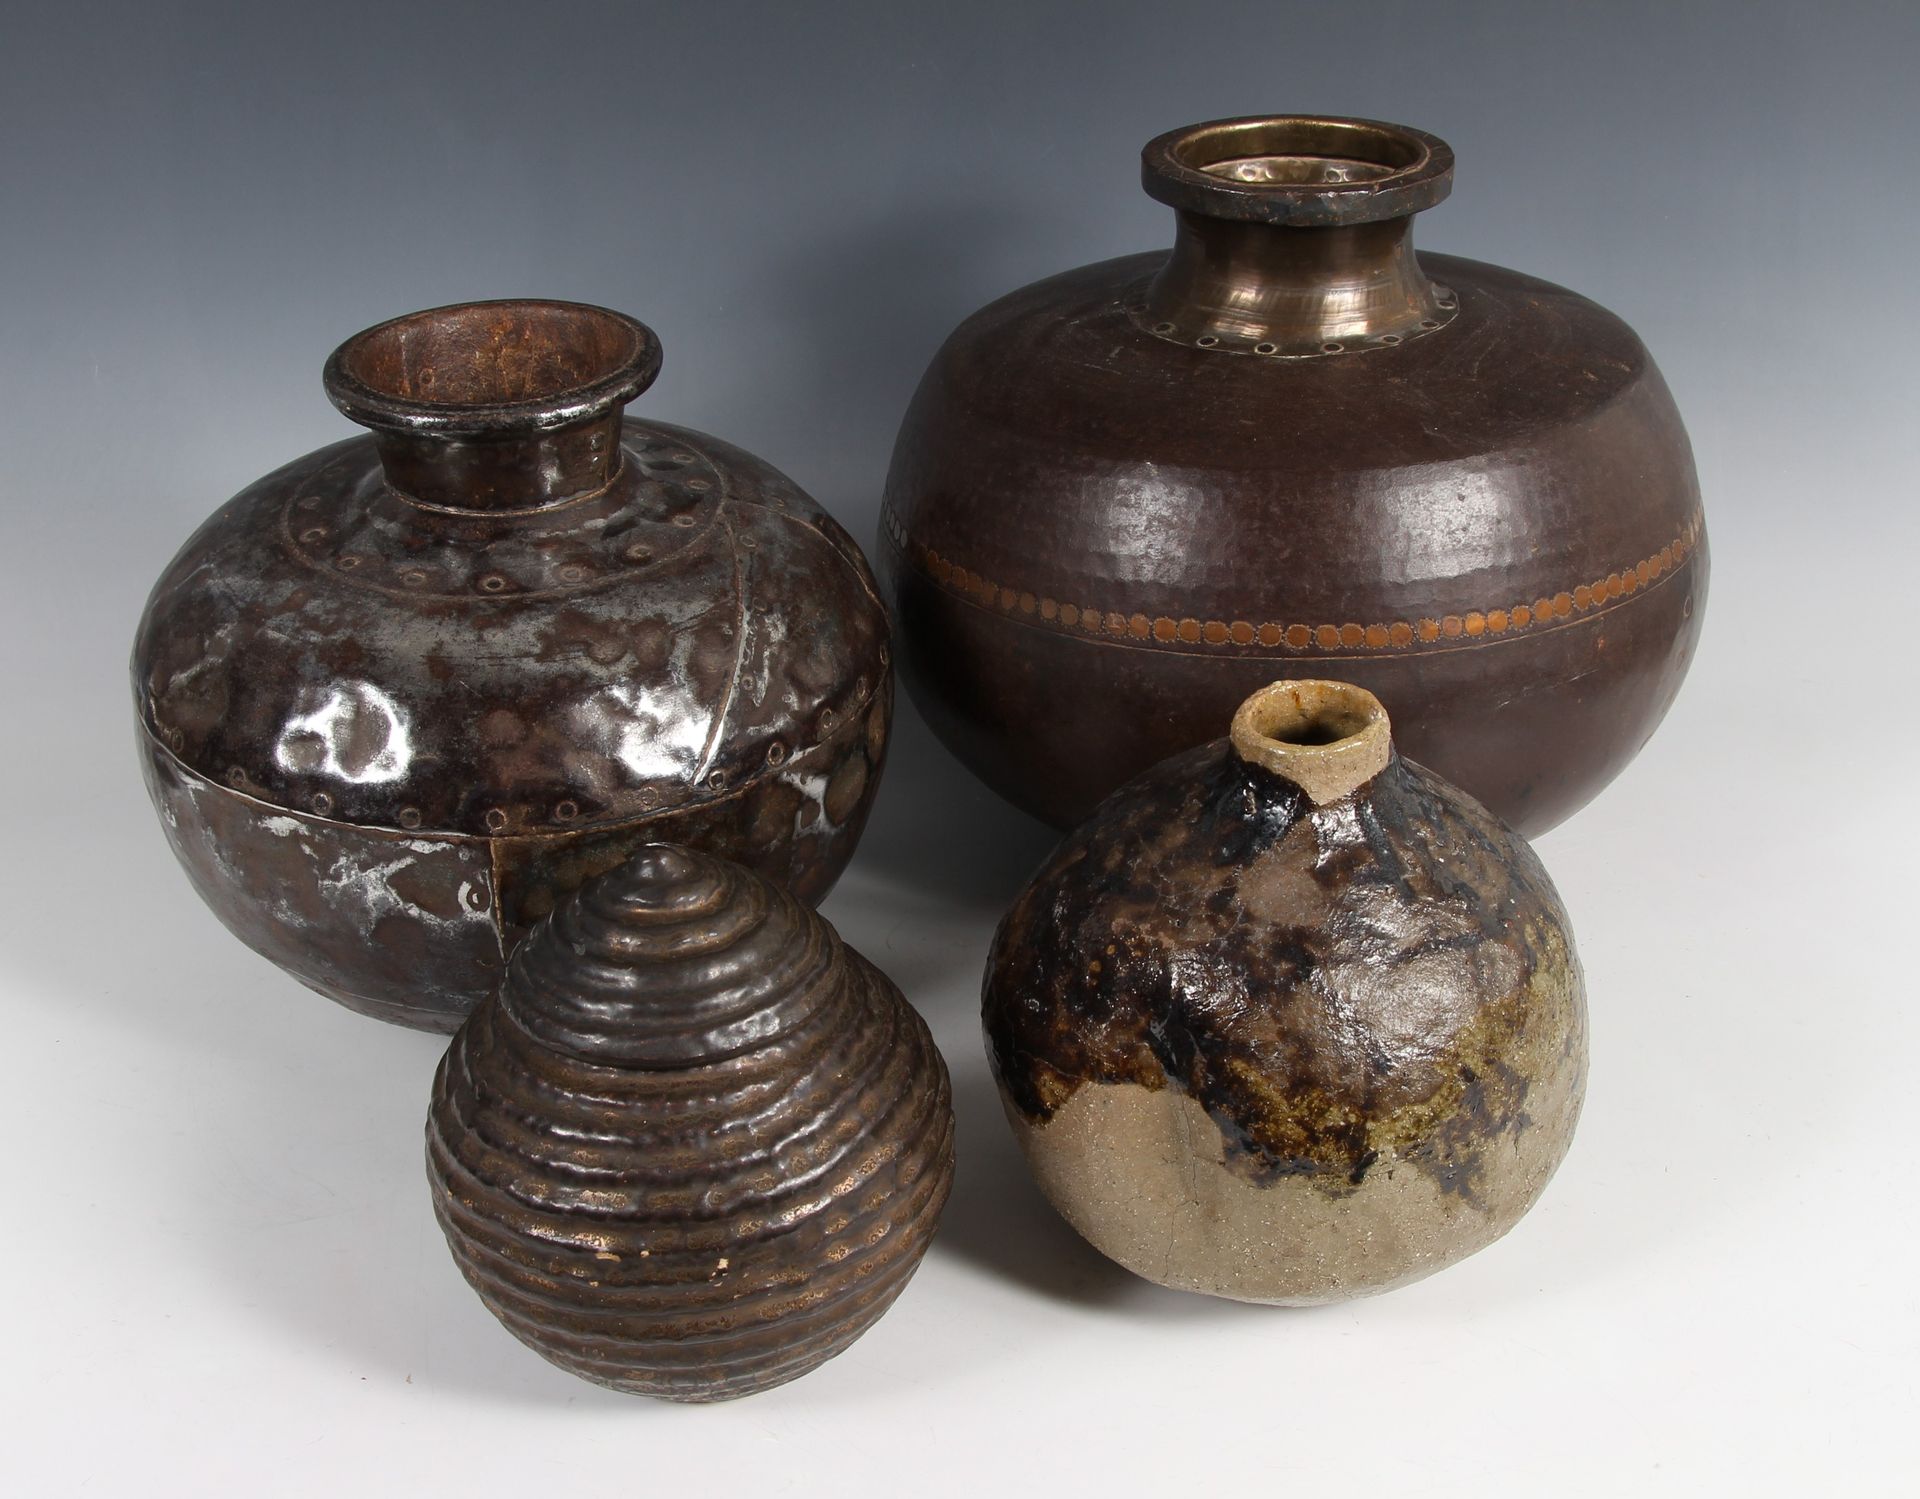 Lot including 2 oil jars in glazed terra cotta, 1 oil jar in brassware, and 1 co&hellip;